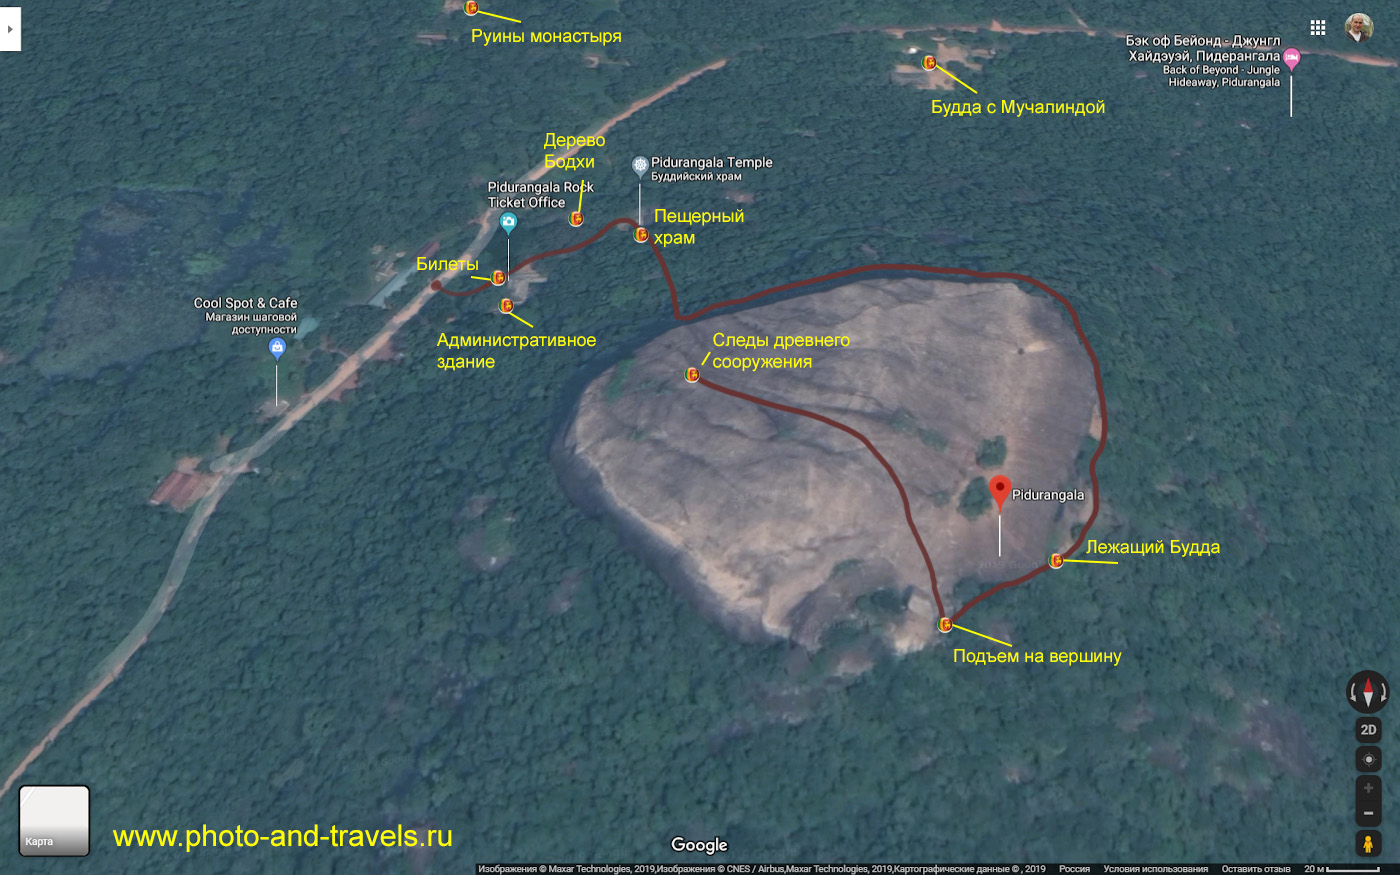 16. Карта со схемой восхождения на скалу Пидурангала (Pidurangala Rock).